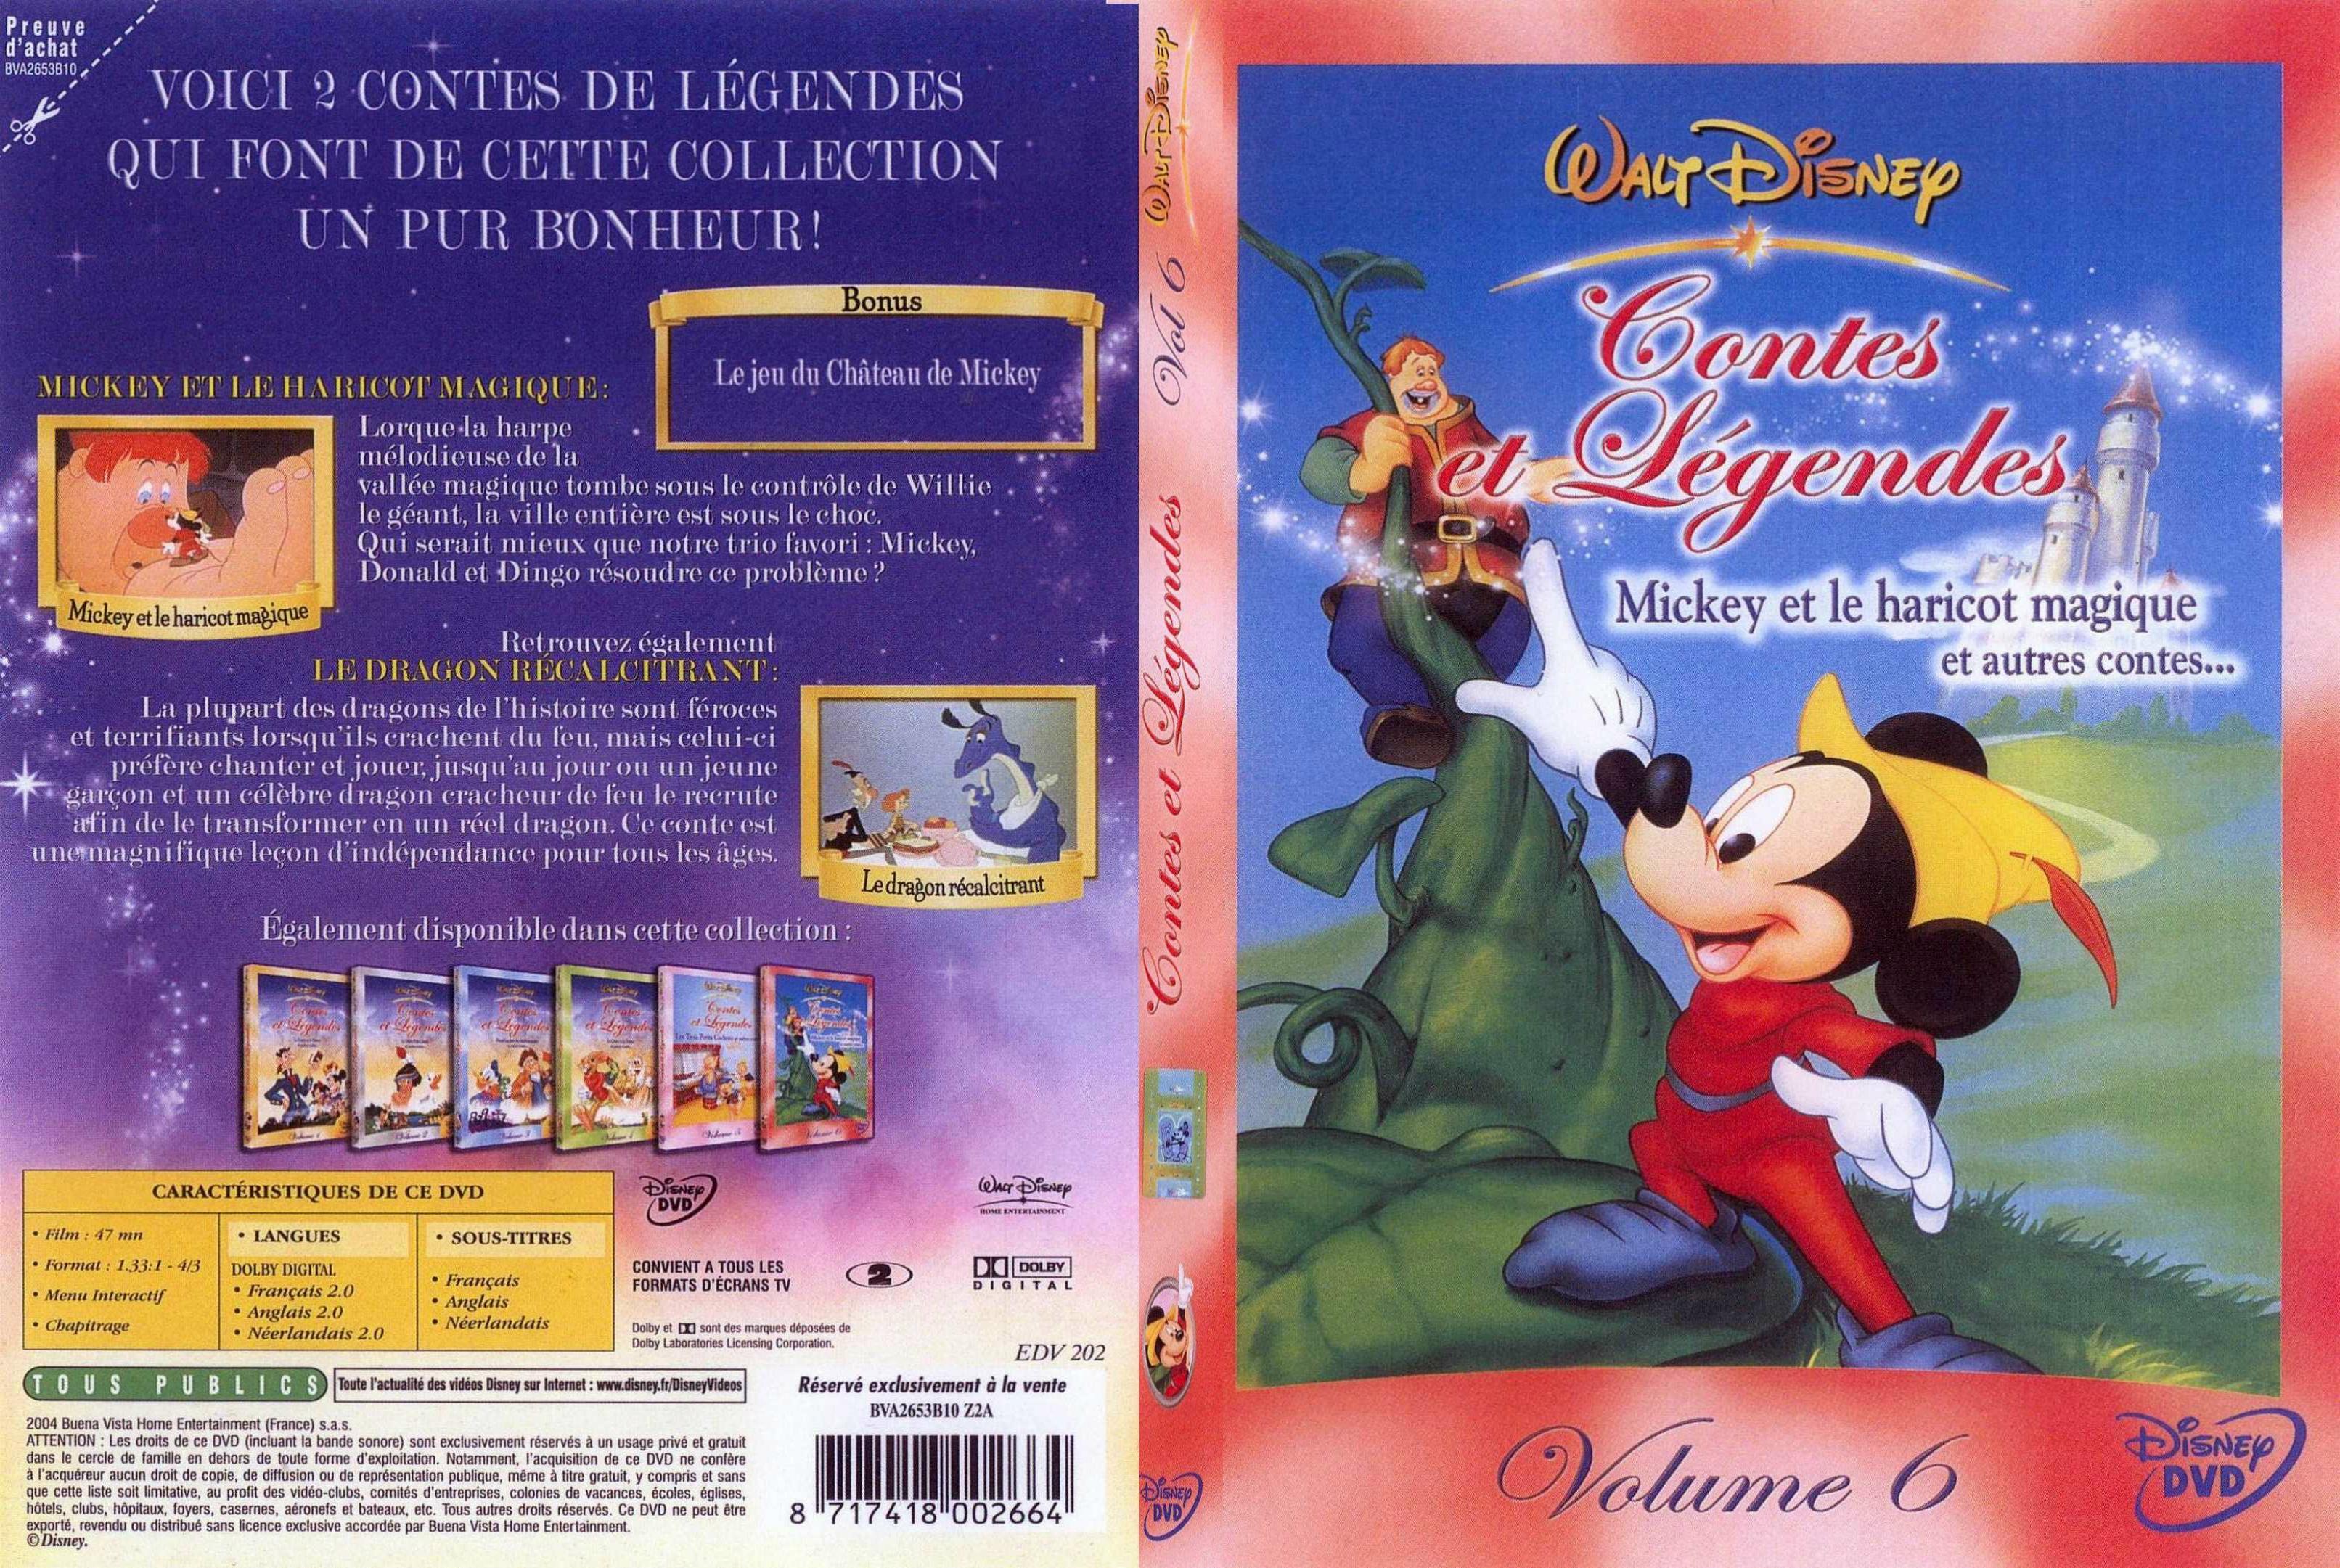 Jaquette DVD Contes et legendes 6 - SLIM